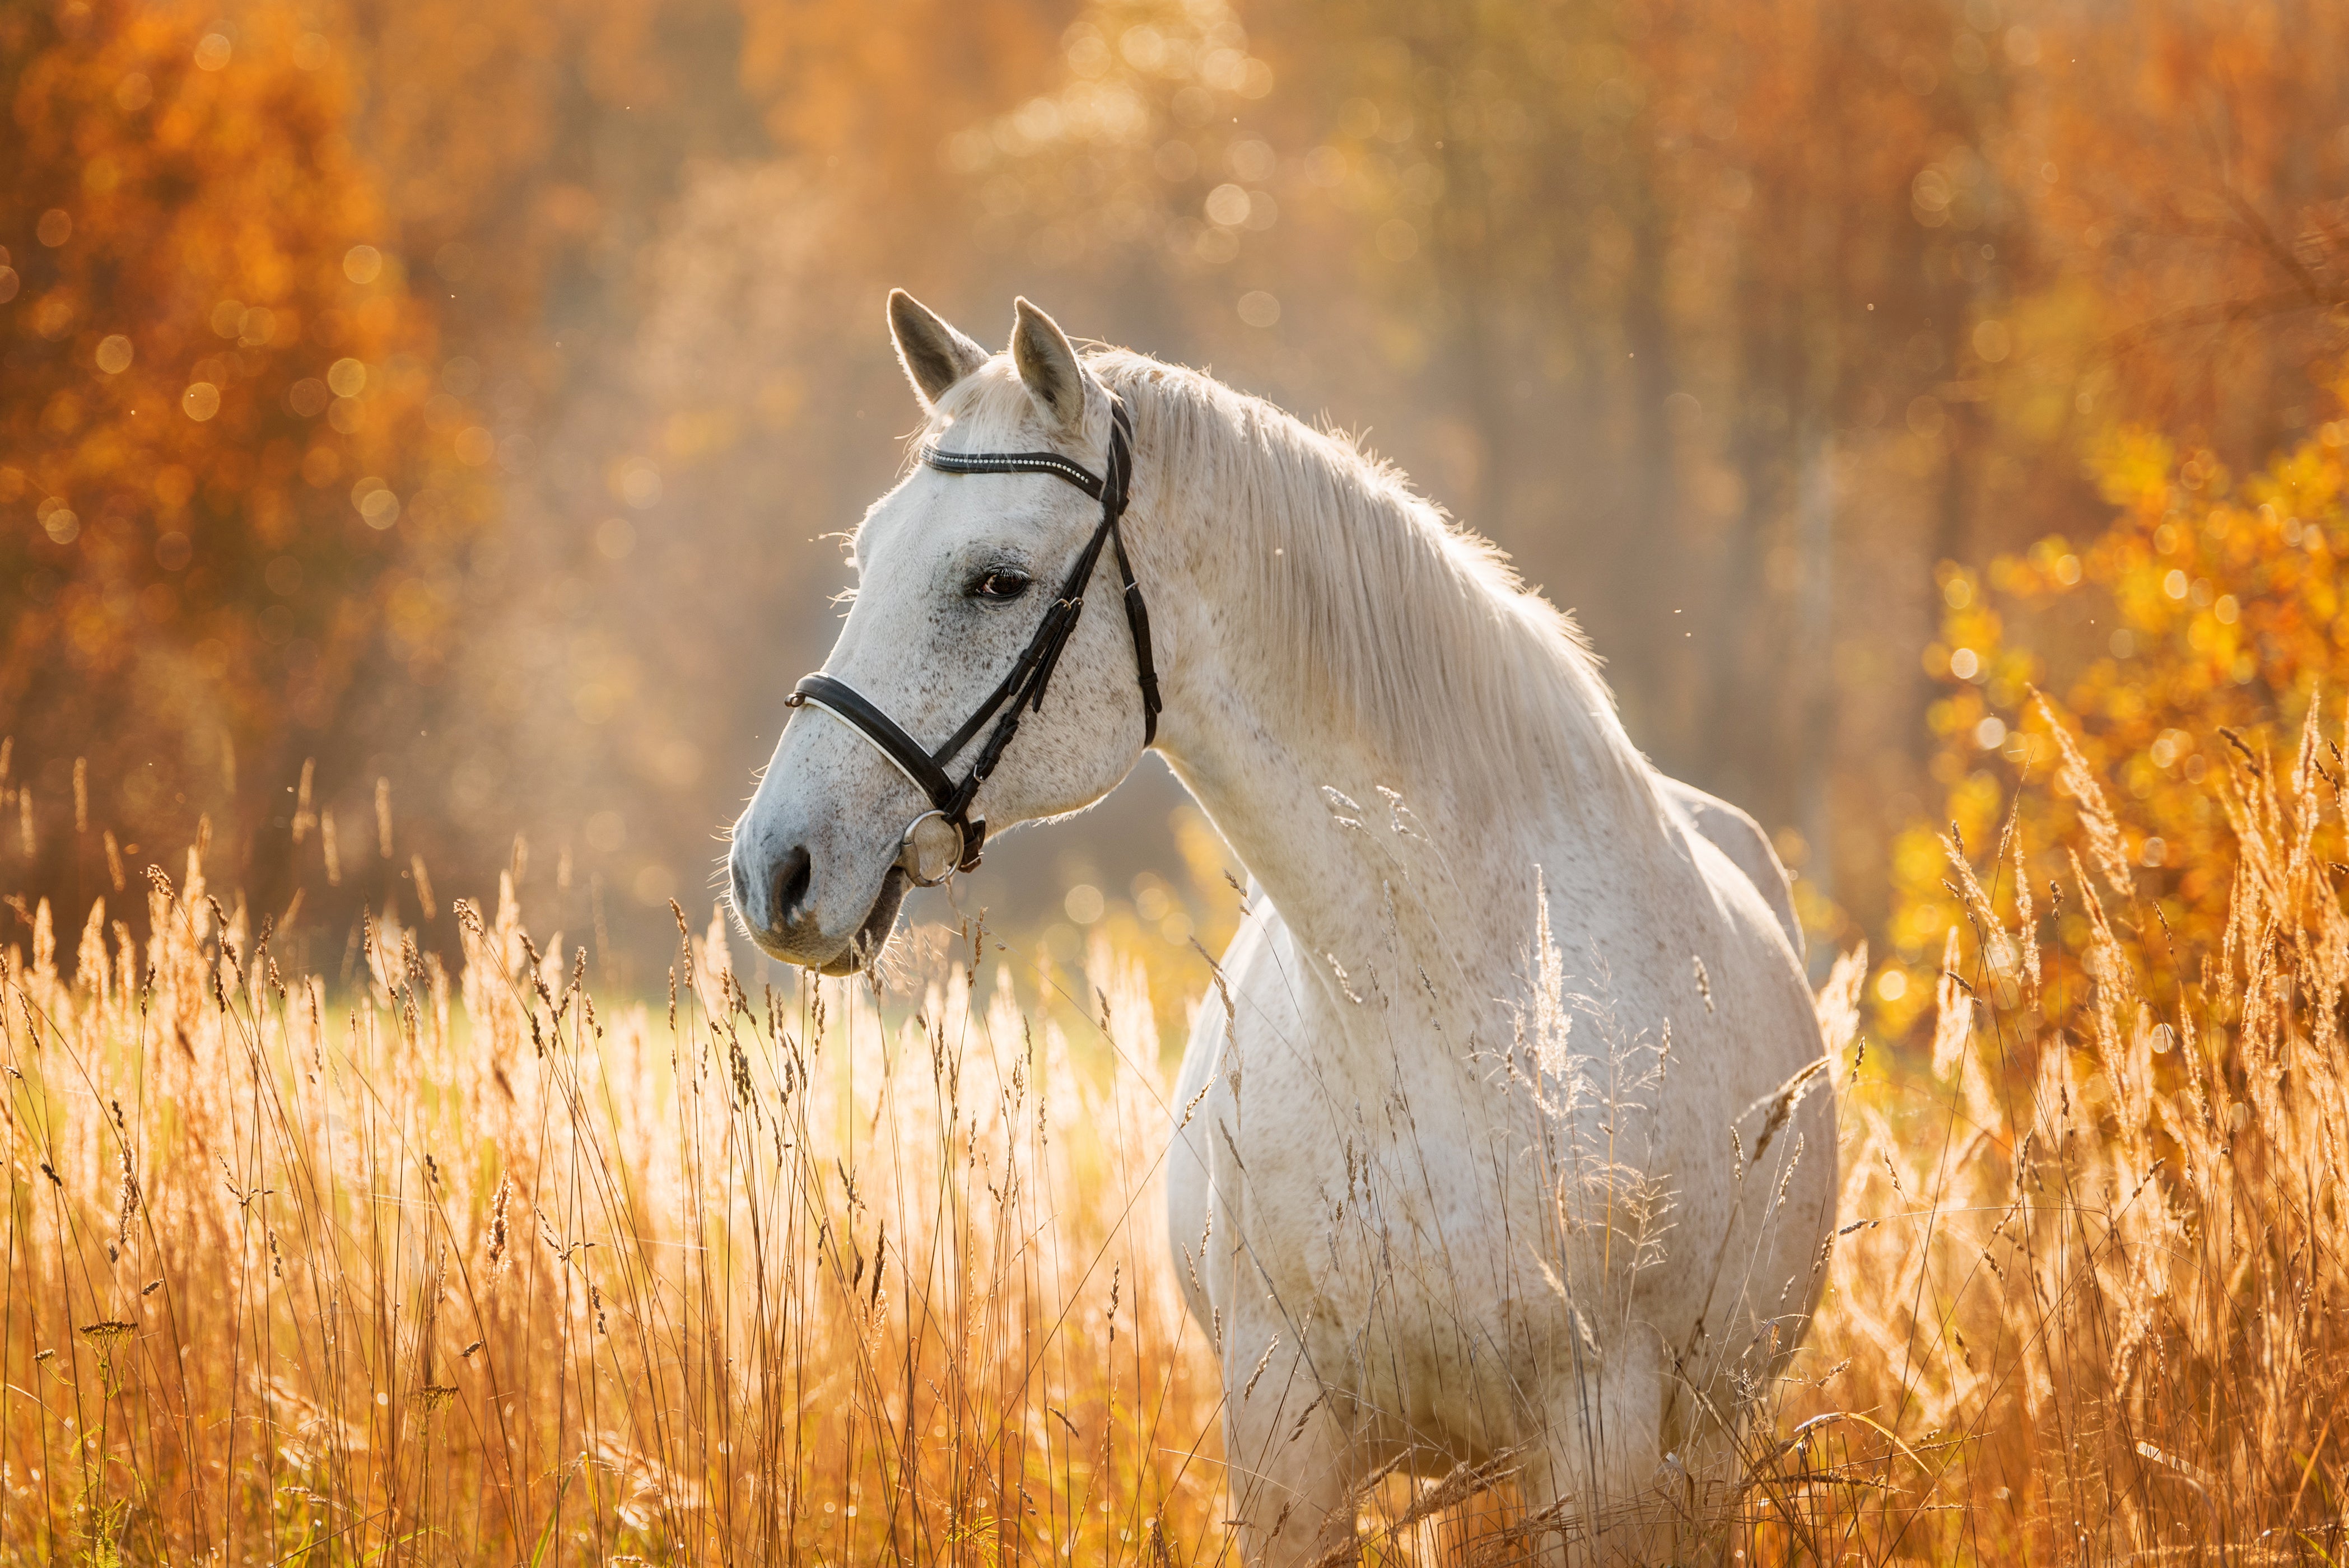 Kotwasser beim Pferd – was hilft?